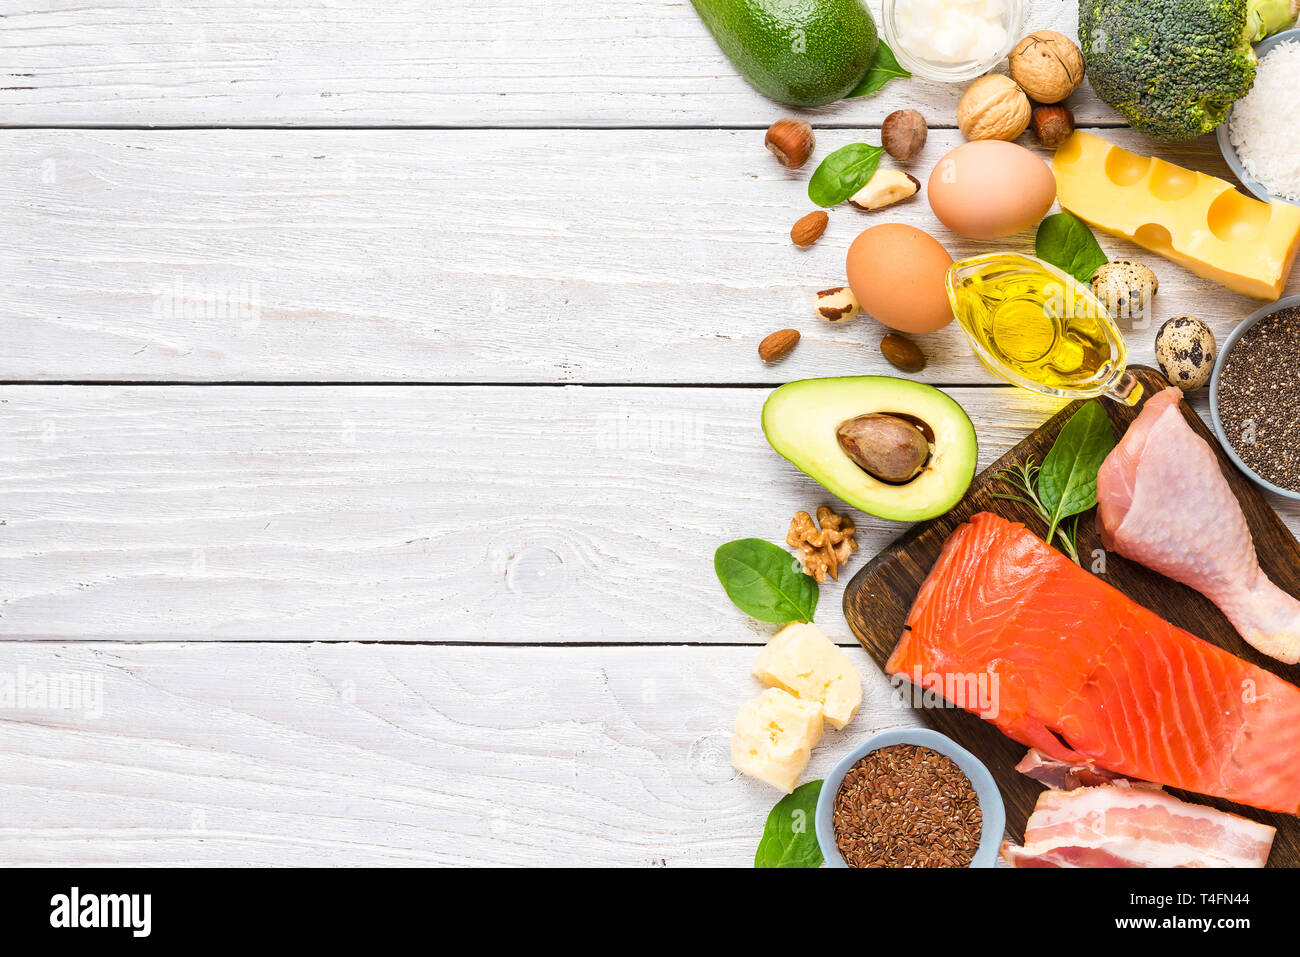 Mangiare sano cibo low carb cheto ketogenic dieta ad alto con omega 3, buoni grassi e proteine. vista superiore con spazio di copia Foto Stock